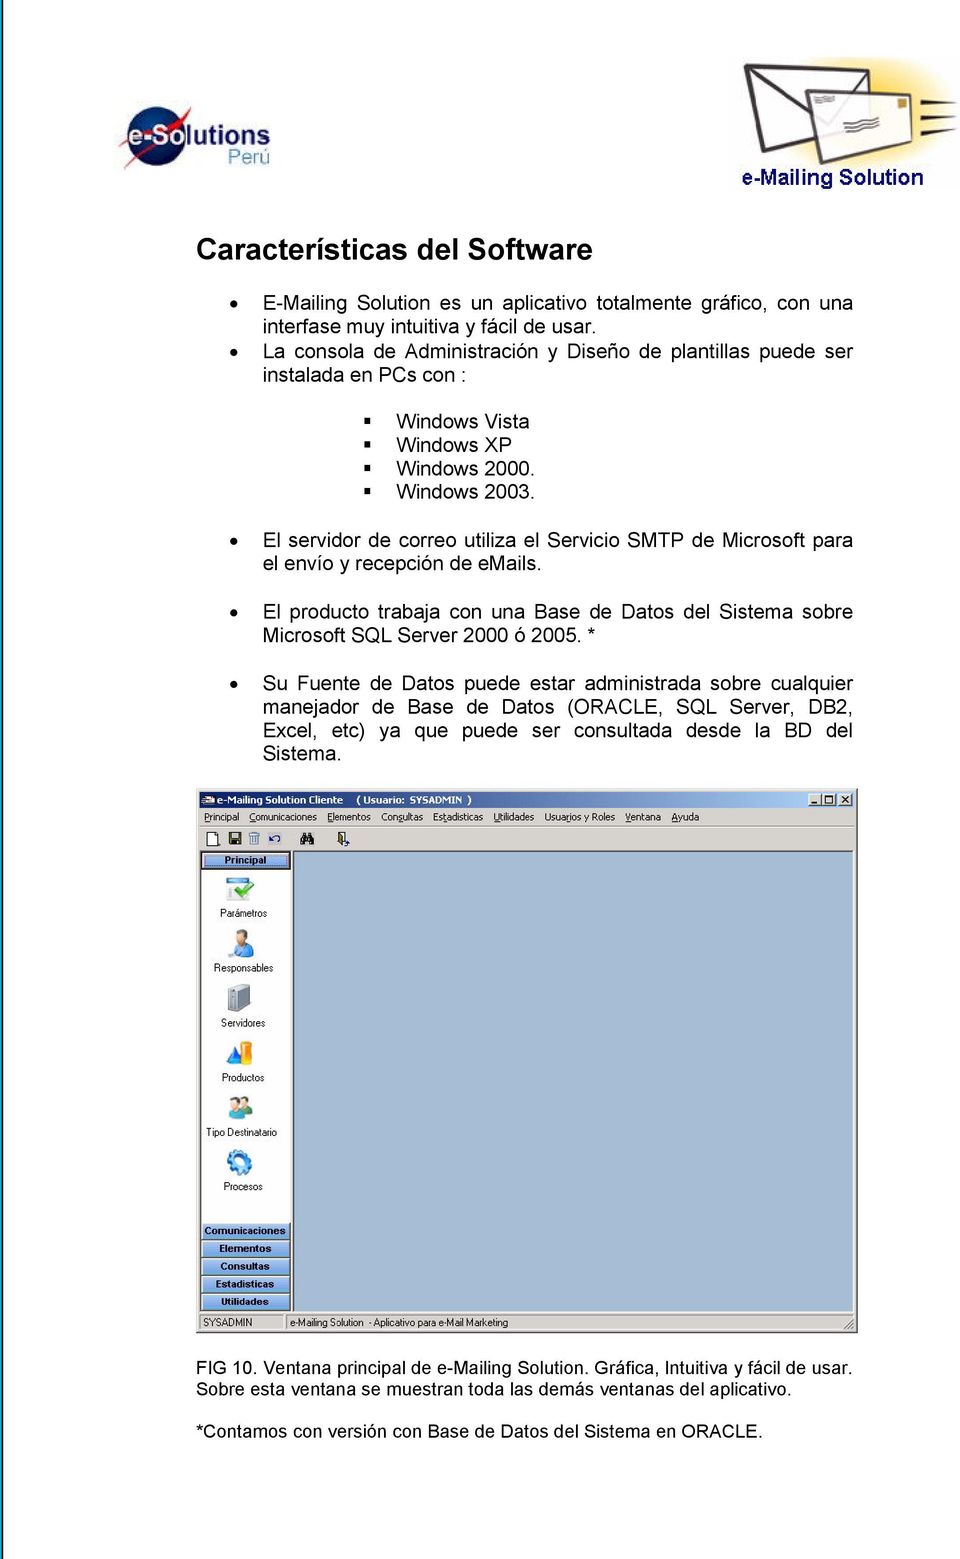 El servidor de correo utiliza el Servicio SMTP de Microsoft para el envío y recepción de emails. El producto trabaja con una Base de Datos del Sistema sobre Microsoft SQL Server 2000 ó 2005.